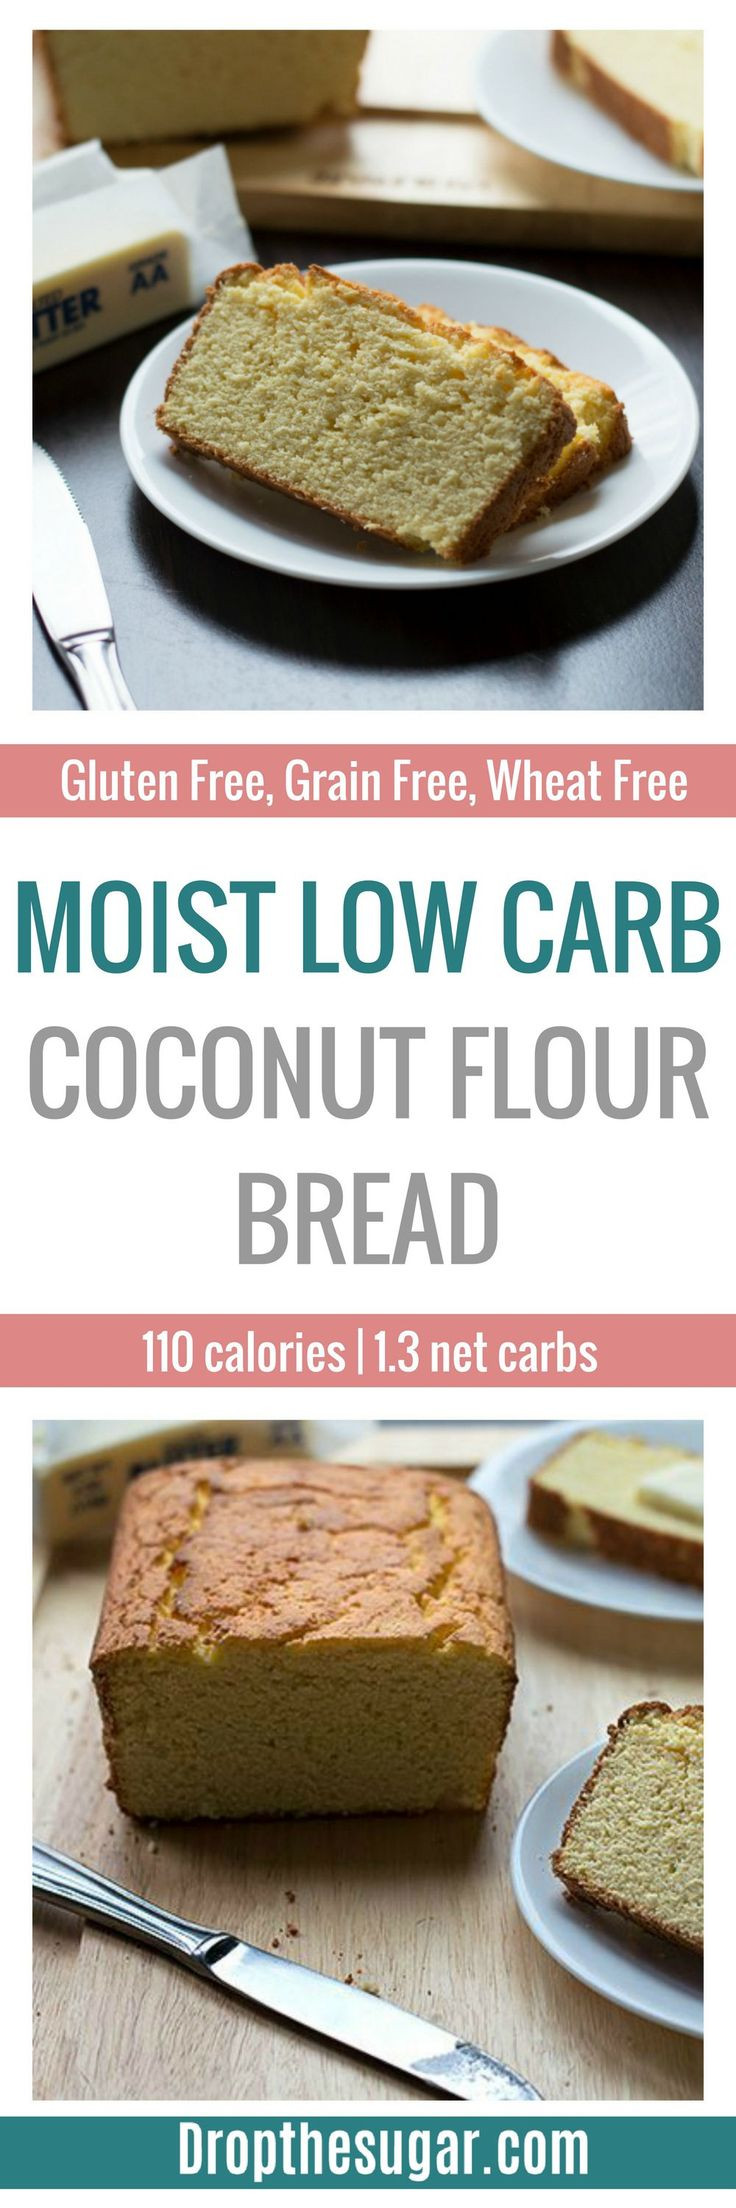 Is Gluten Free Bread Healthy
 Best 25 Keto bread ideas on Pinterest